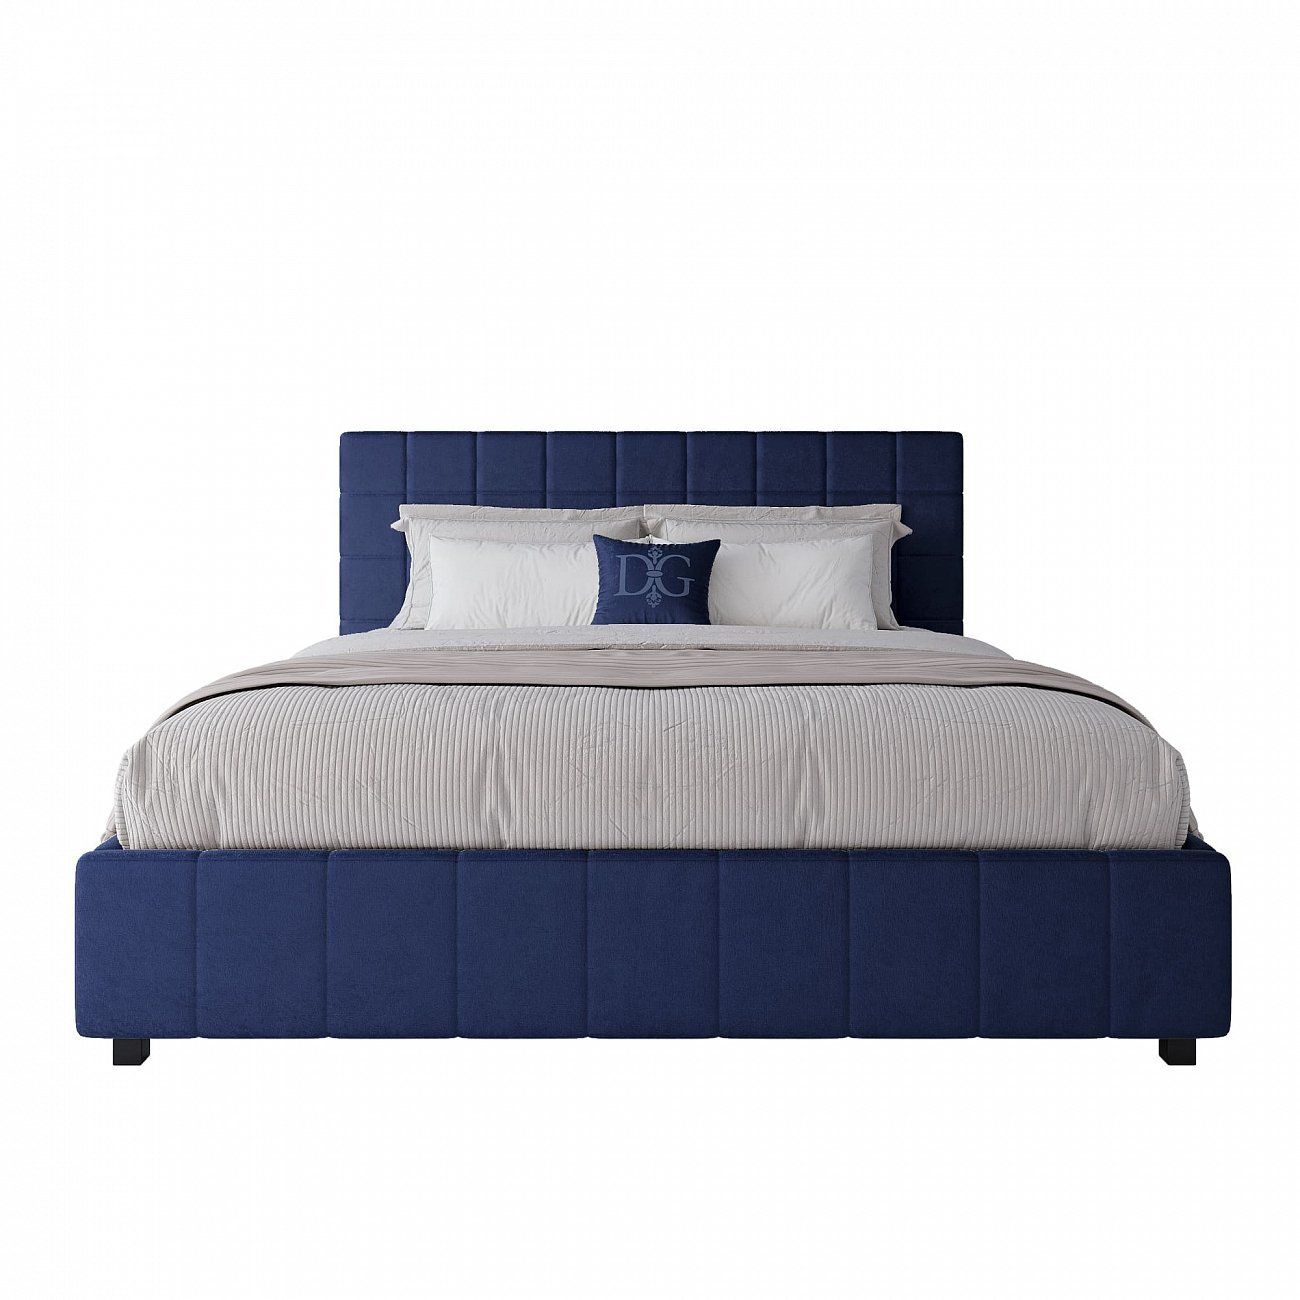 Кровать двуспальная 180х200 см синяя Shining Modern